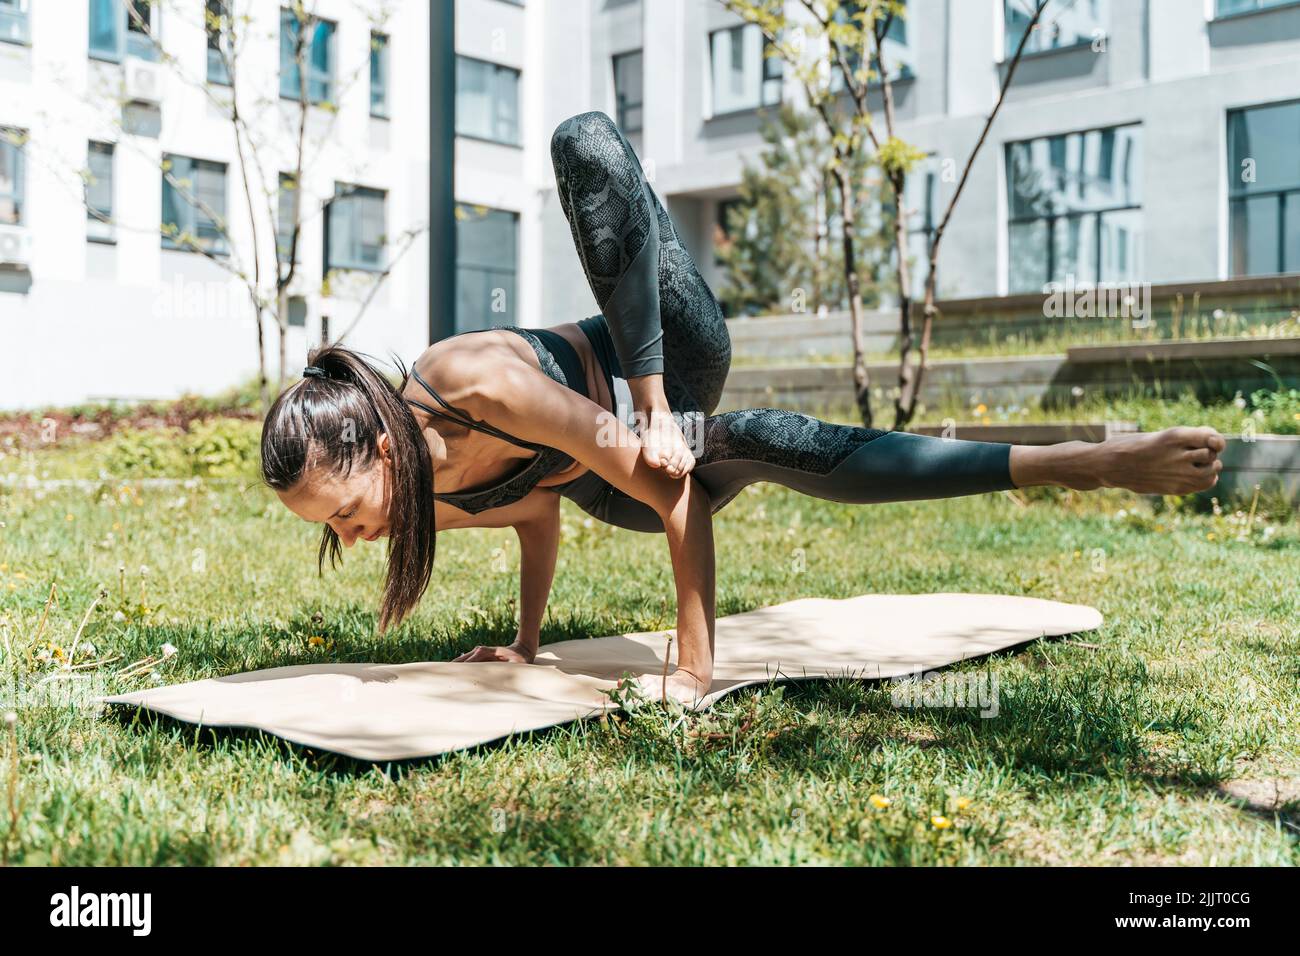 Mujer en yoga pose al aire libre en el parque o jardín. Una chica europea esbelta se dedica al entrenamiento de la práctica del yoga indio para la curación y el desarrollo del cuerpo en el tiempo soleado del verano. Salud, clases, relajación, concepto. Fotografías de alta calidad Foto de stock